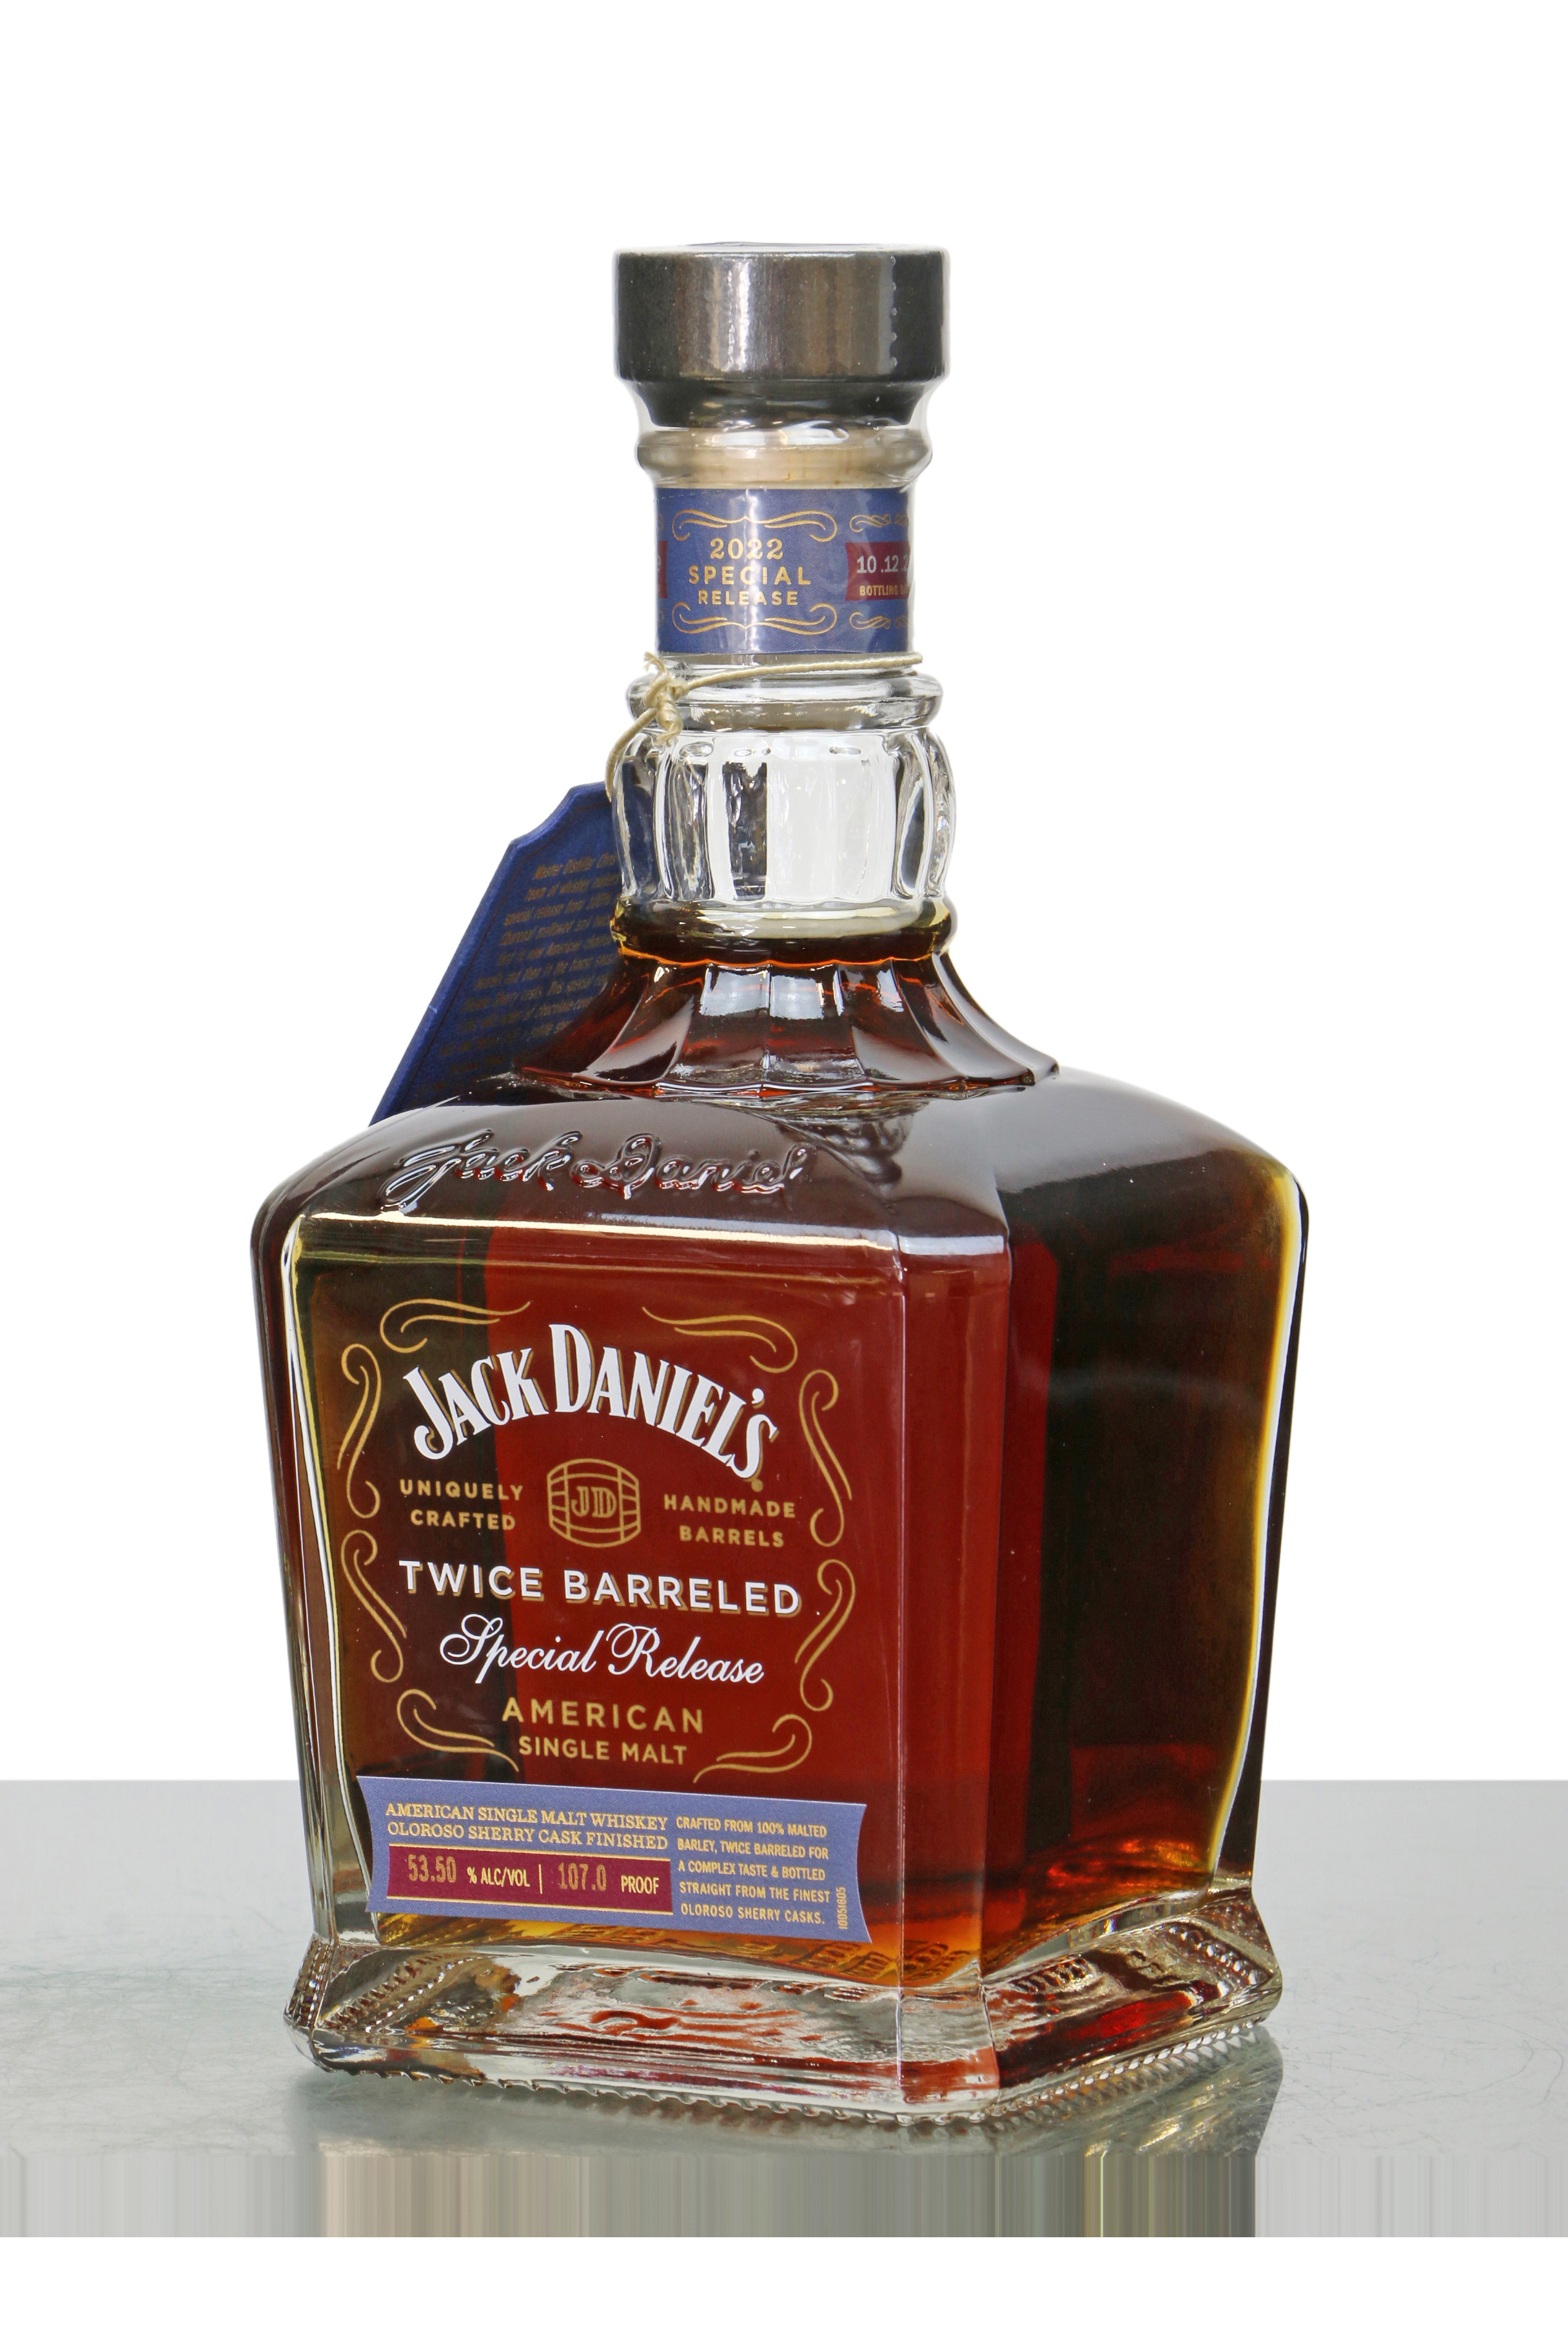 Jack Daniel's American Single Malt Twice Barreled Special Release